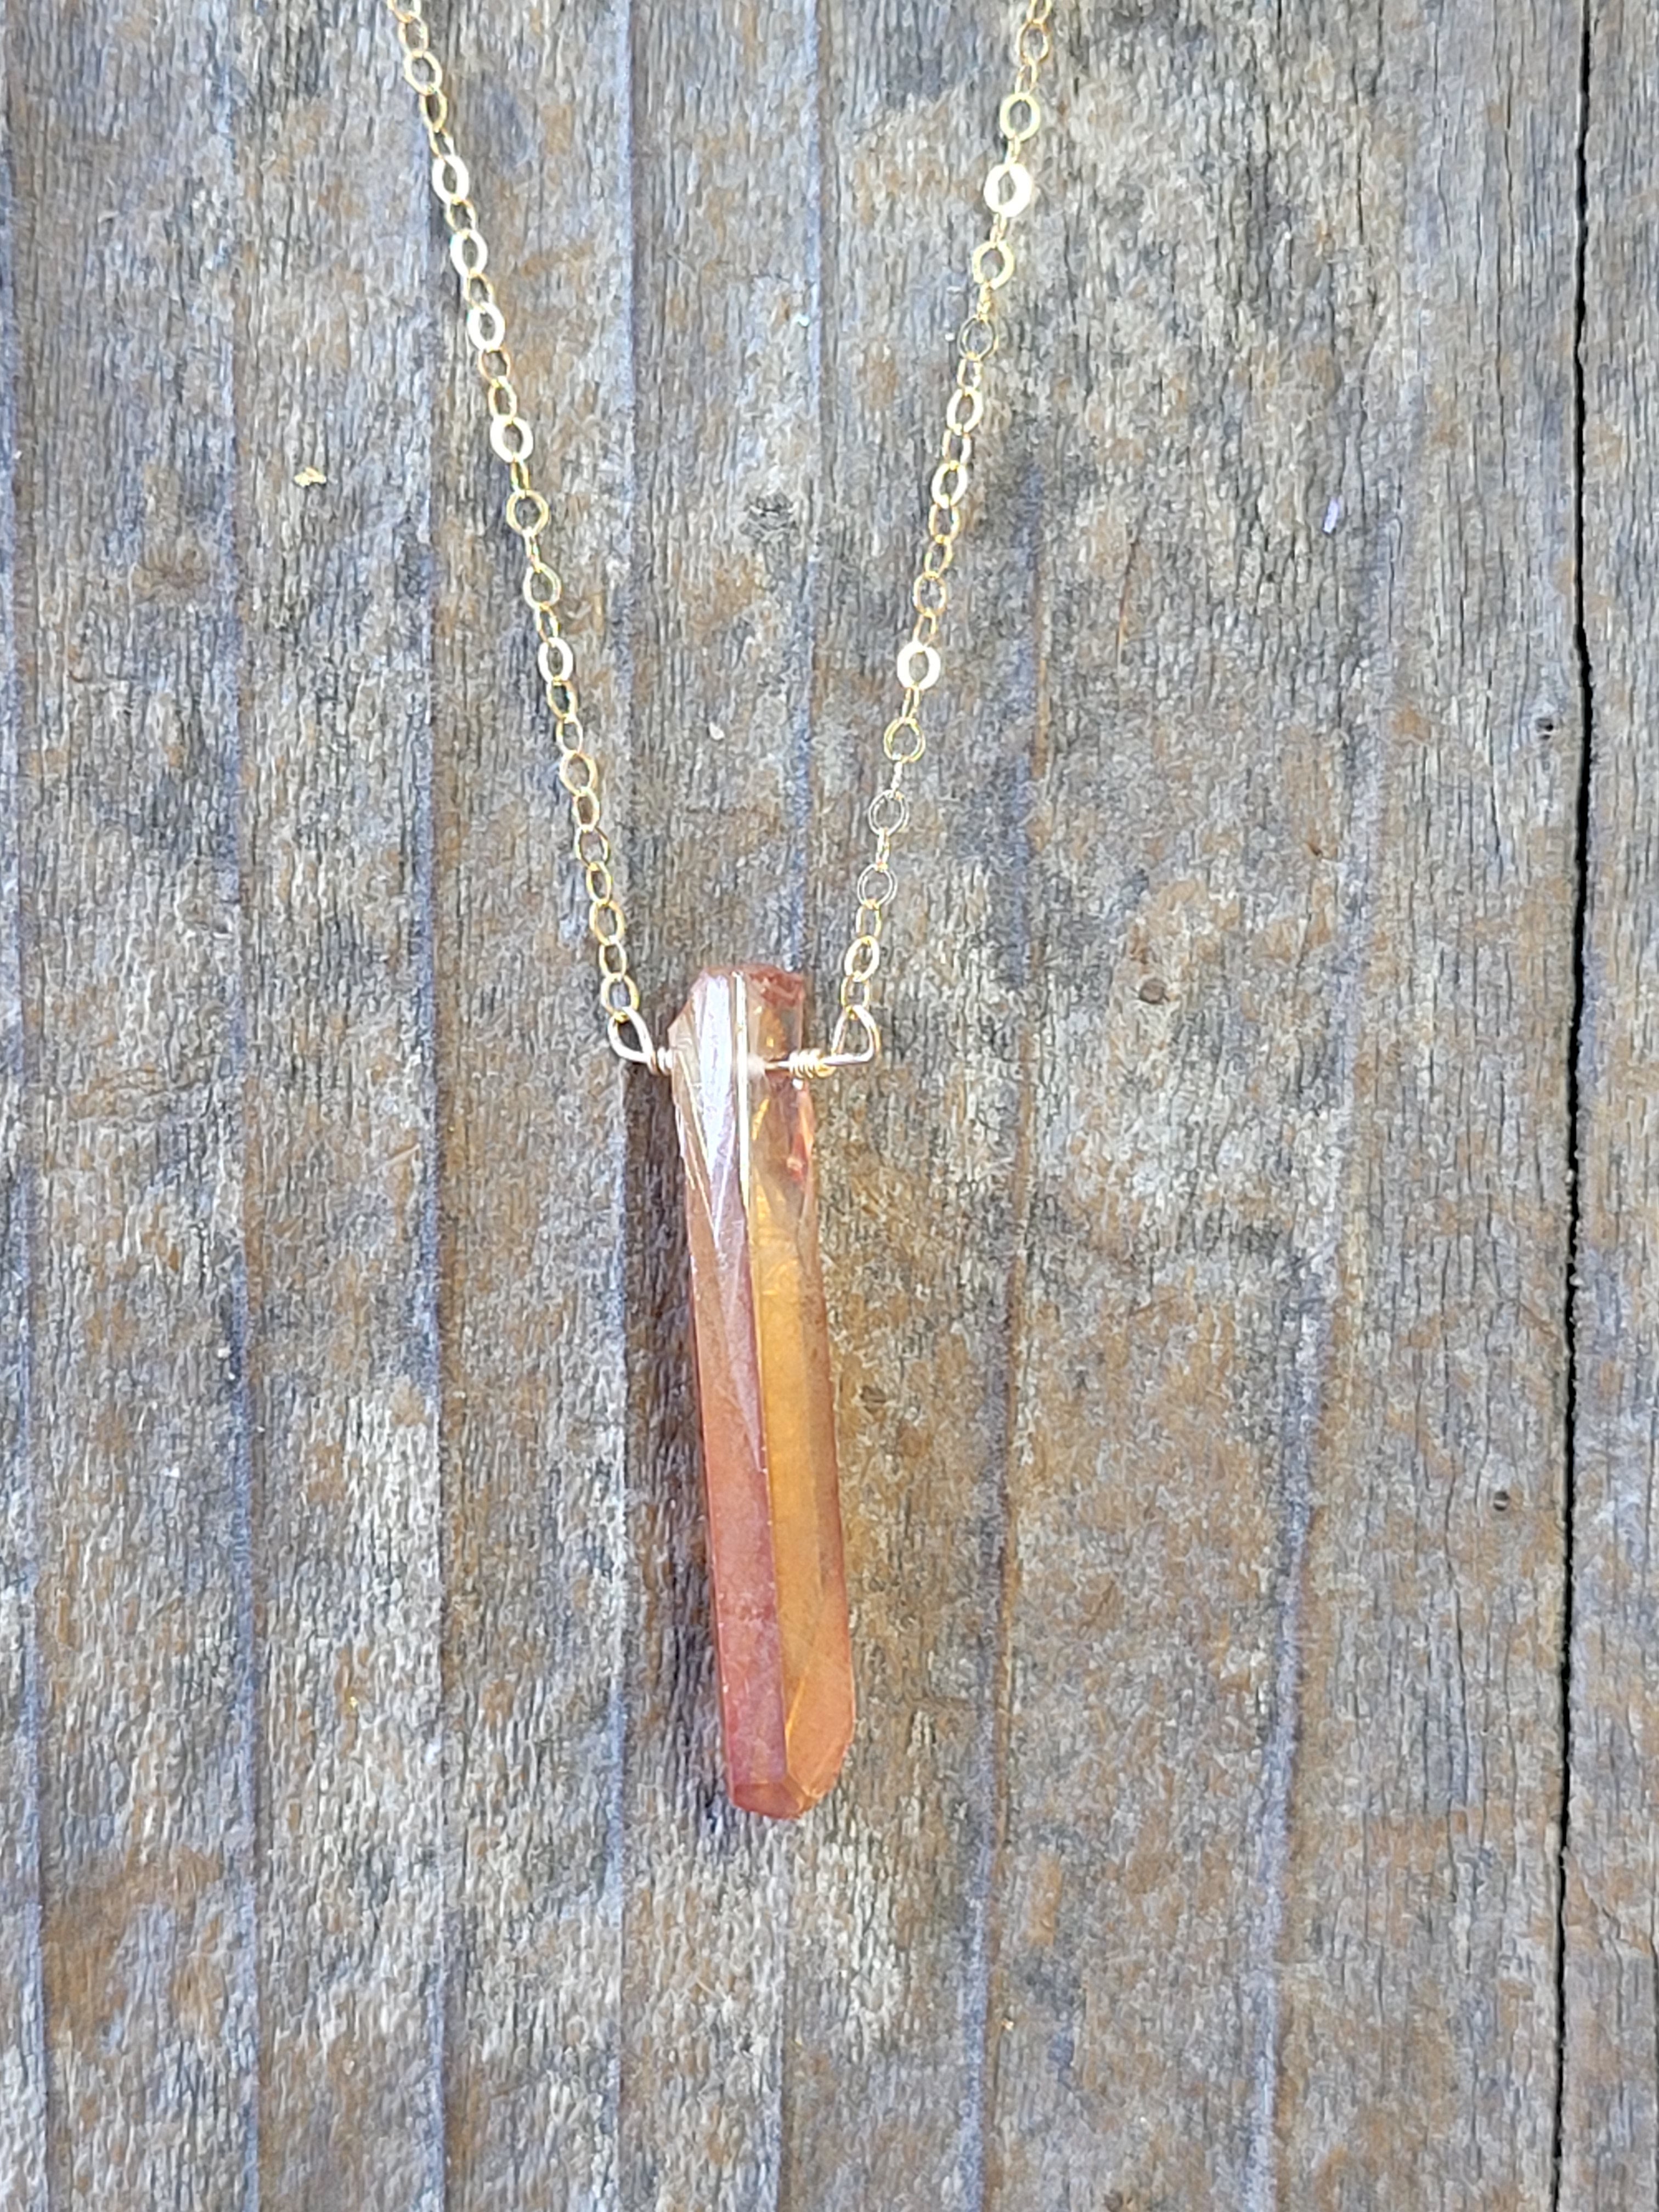 Single Peach Qtz Crystal Pendant Necklace